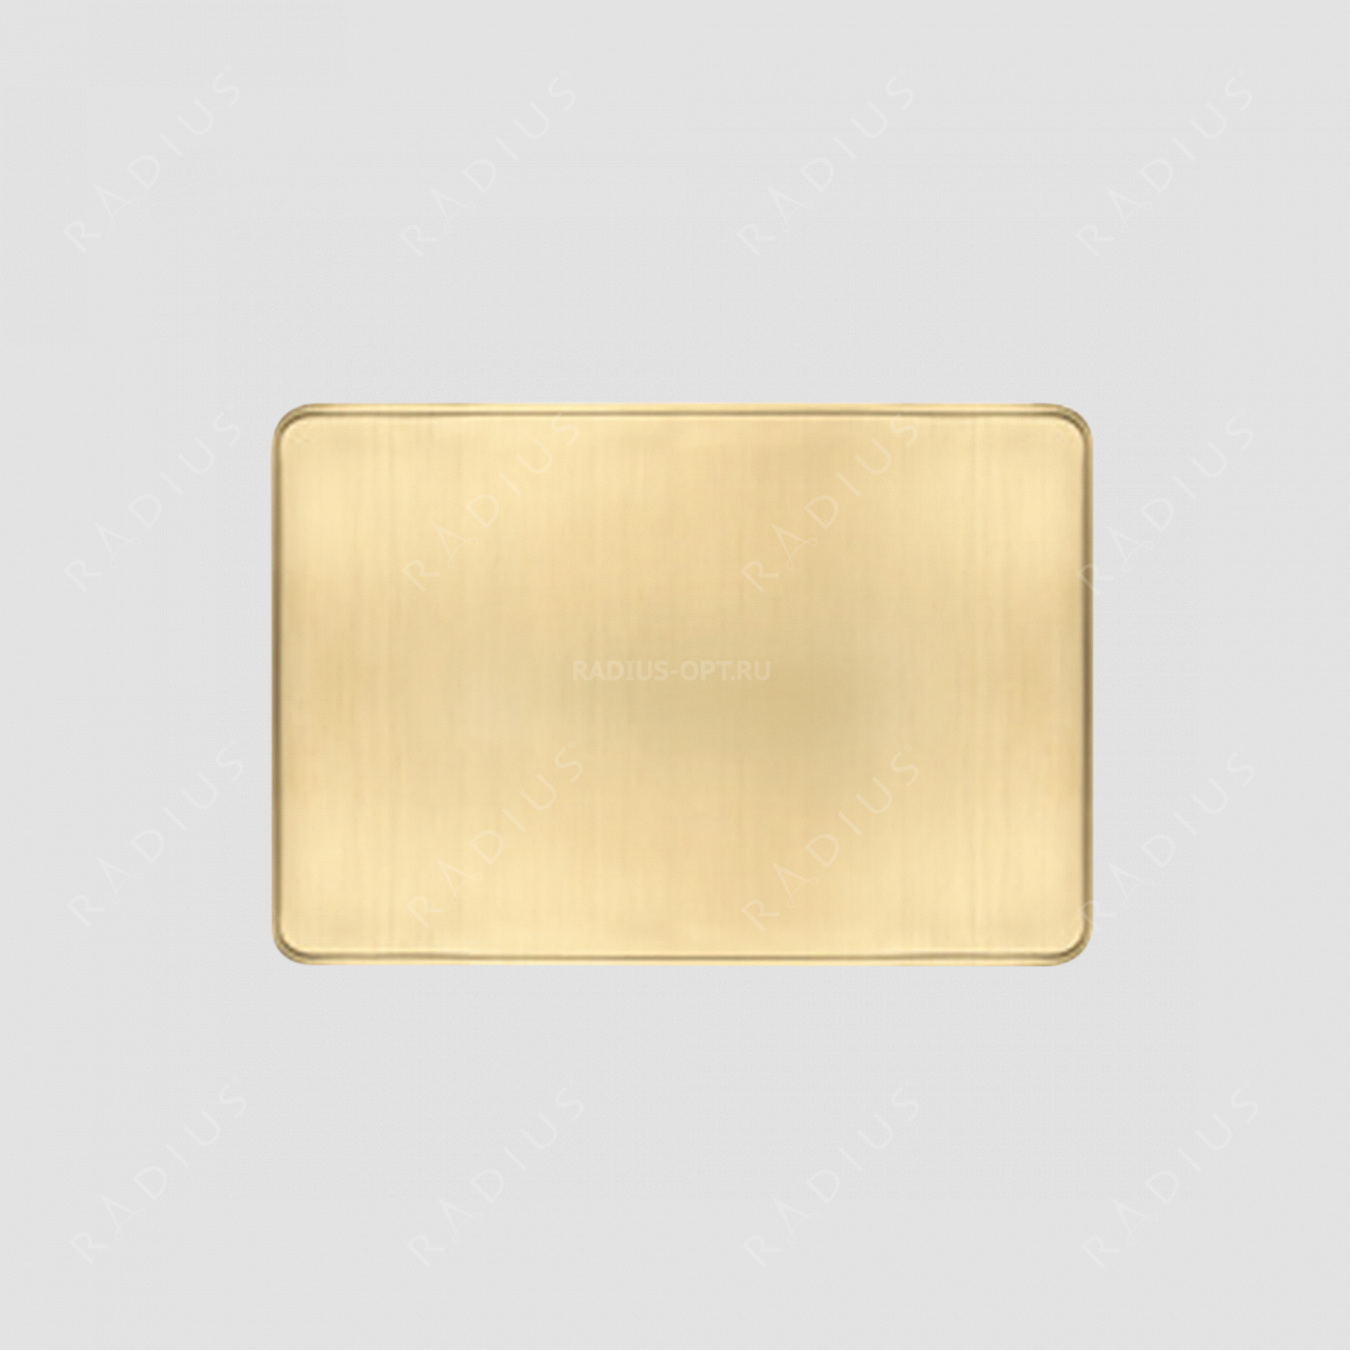 Салфетка подстановочная, винил, 30х45 см, цвет золотой, Deluxe, серия Saleen, Westmark, Германия